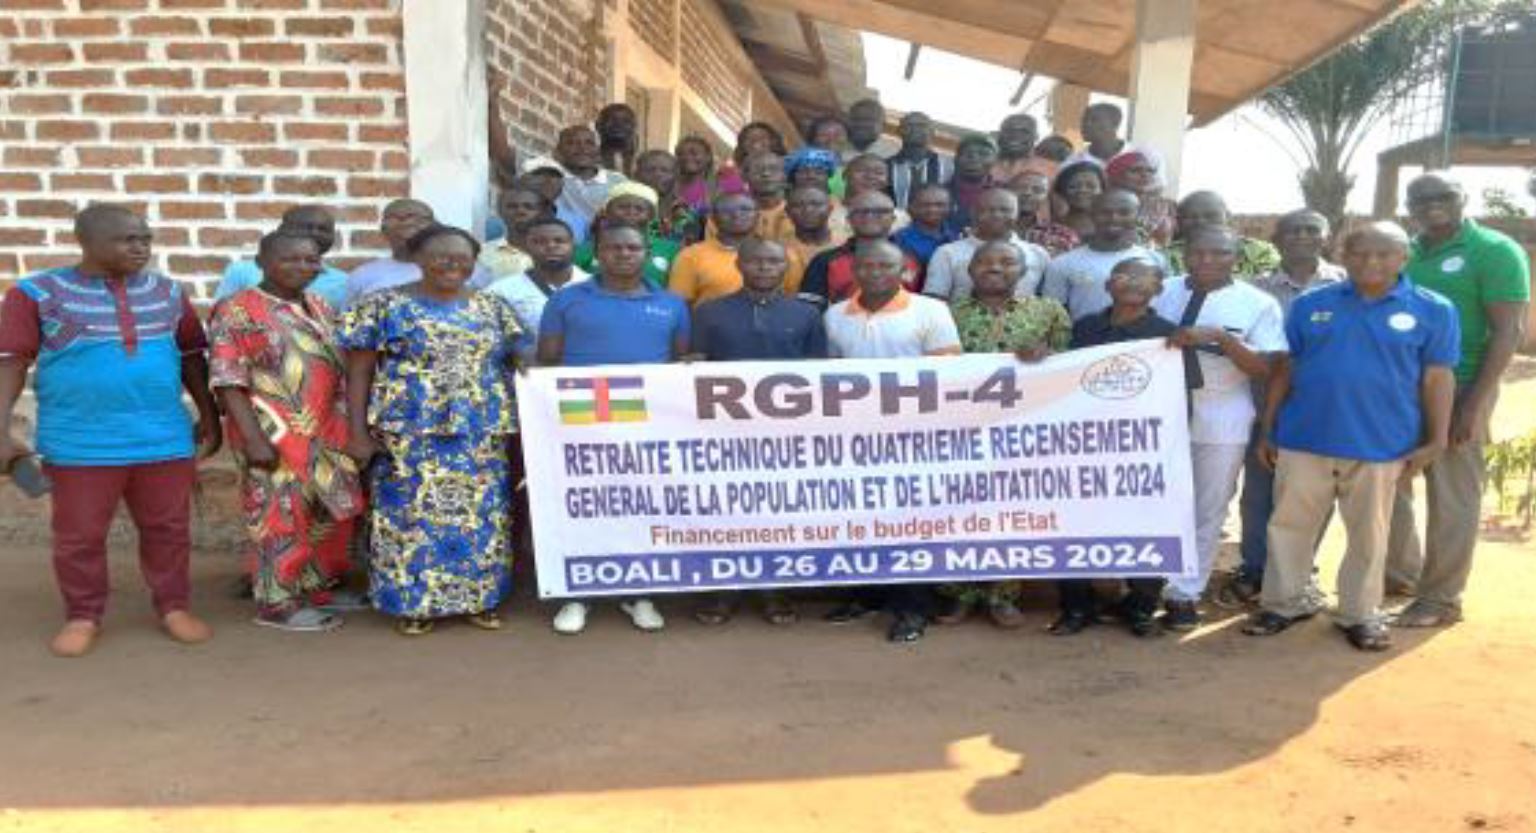 RGPH-4 : Retraite Technique du Quatrième Recensement Général de la Population et de l’Habitation (RGPH-4) à Boali